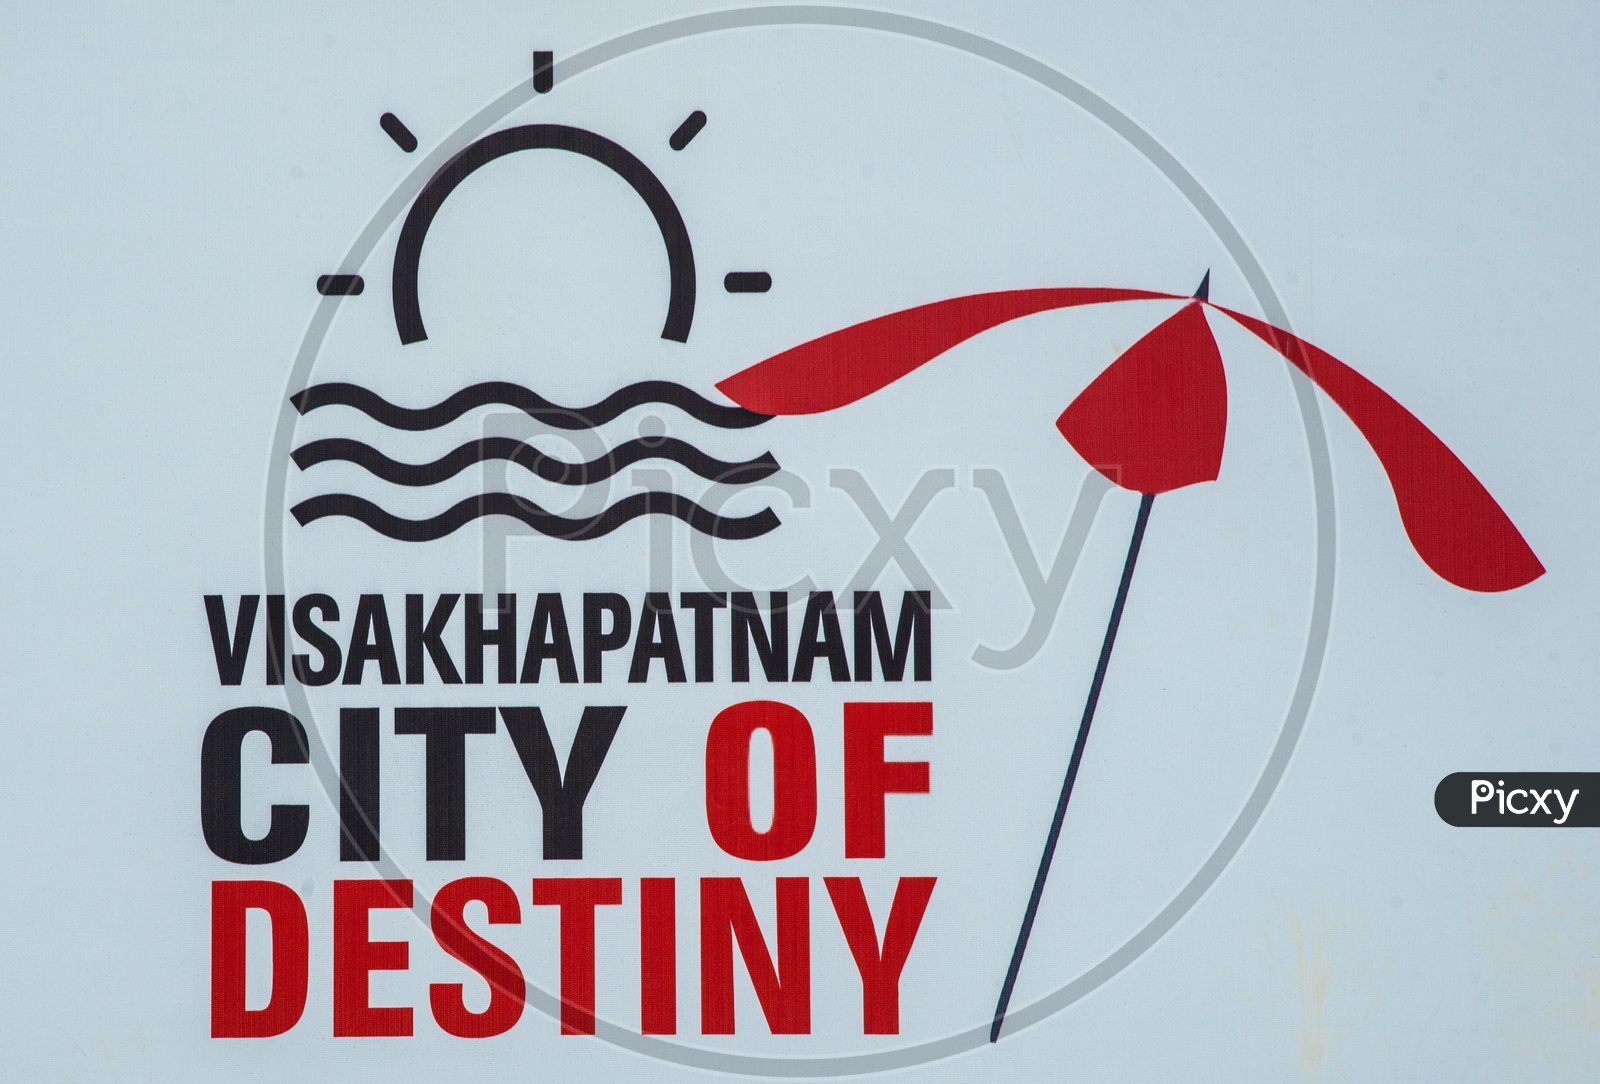 Visakhapatnam - City of Destiny